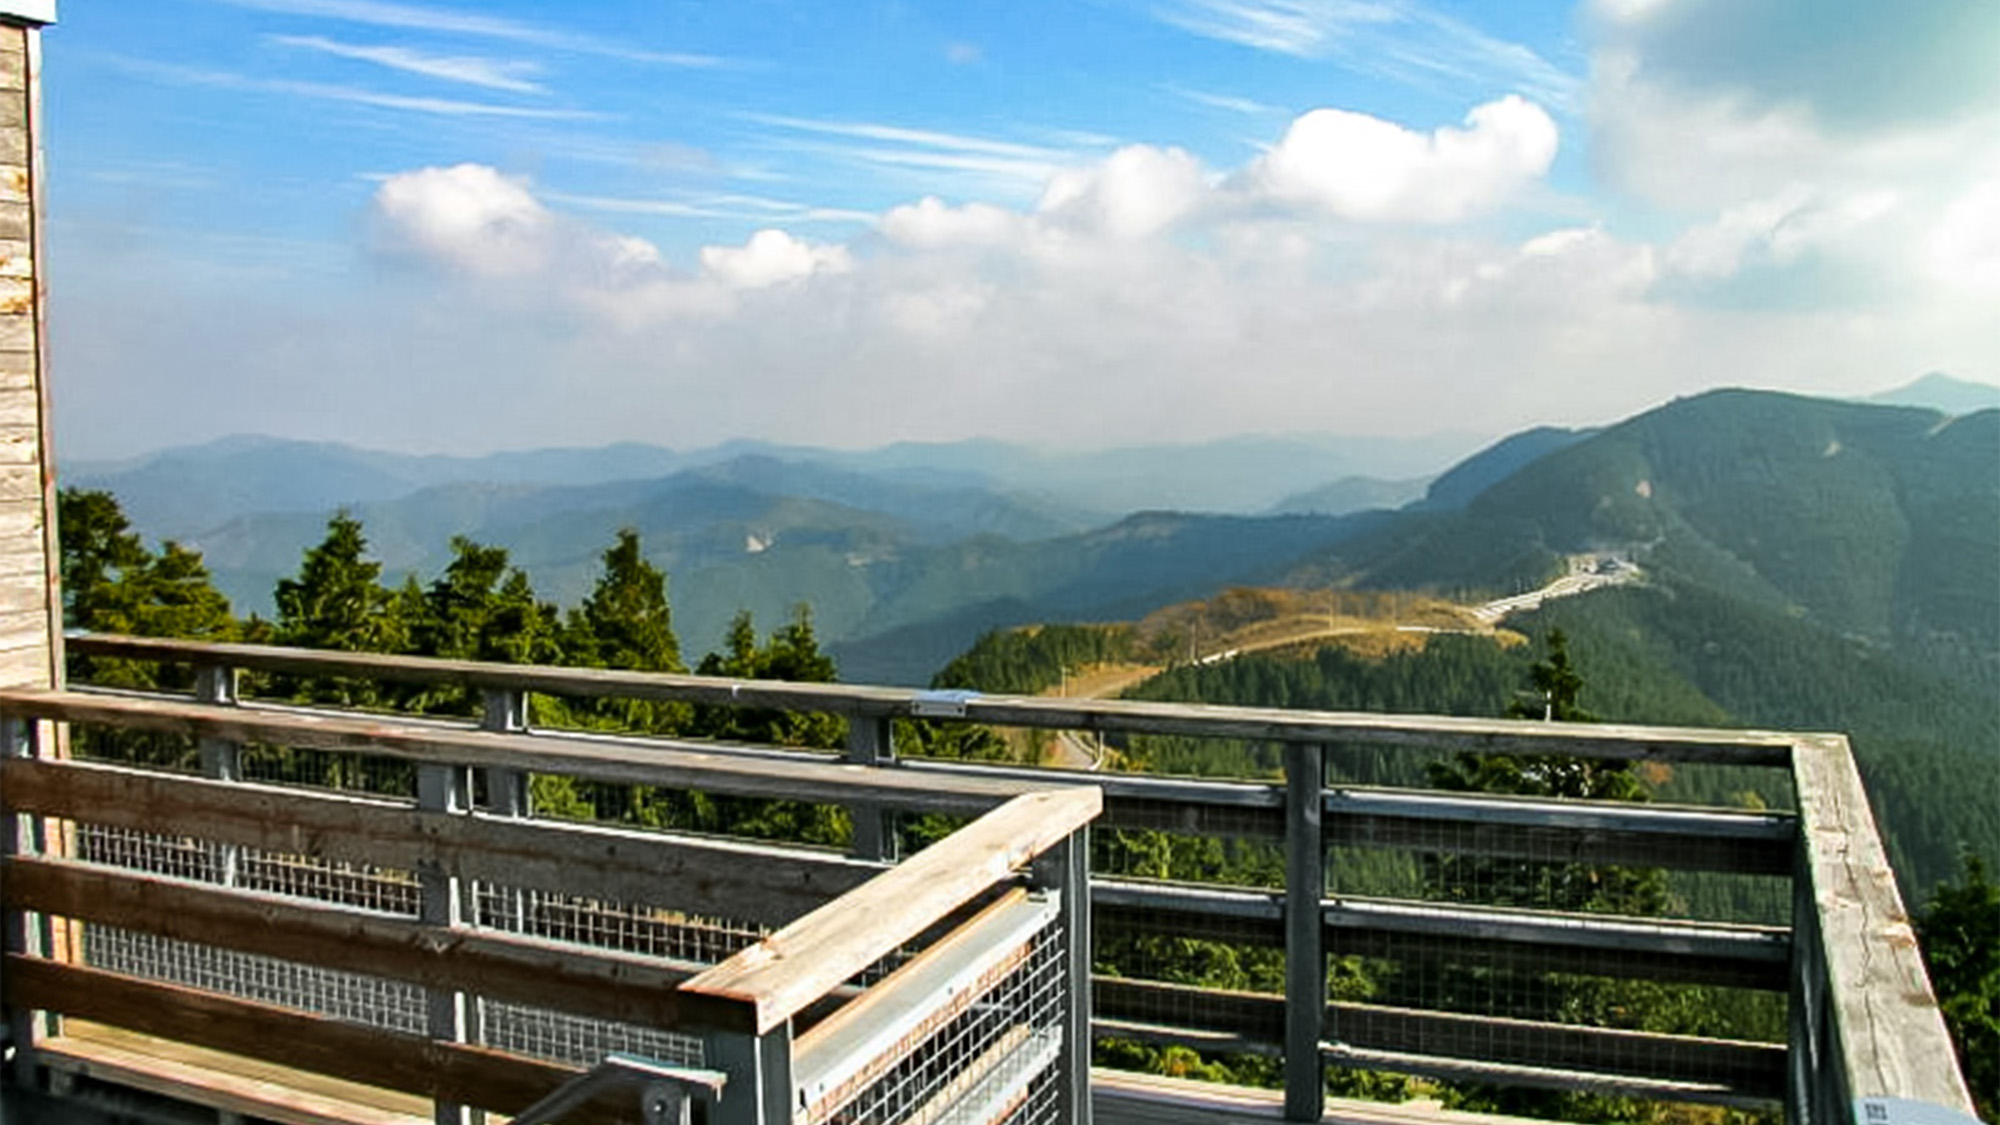 ・【周辺観光】鶴姫展望台。晴れた日には四国まで見渡せるほどの絶景スポット